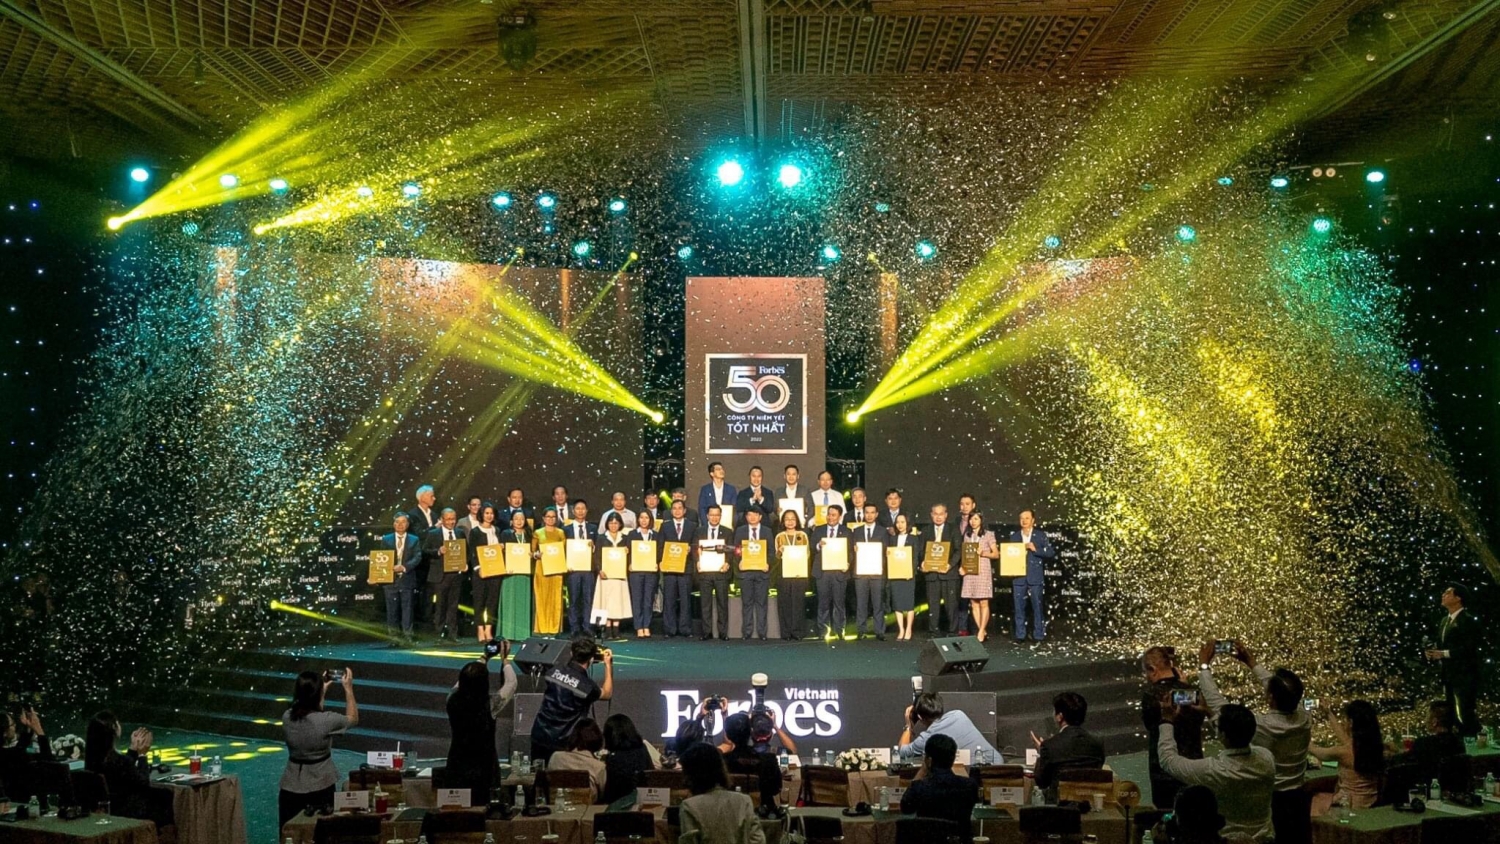 Bốn doanh nghiệp dầu khí được vinh danh trong Top 50 công ty niêm yết tốt nhất Việt Nam